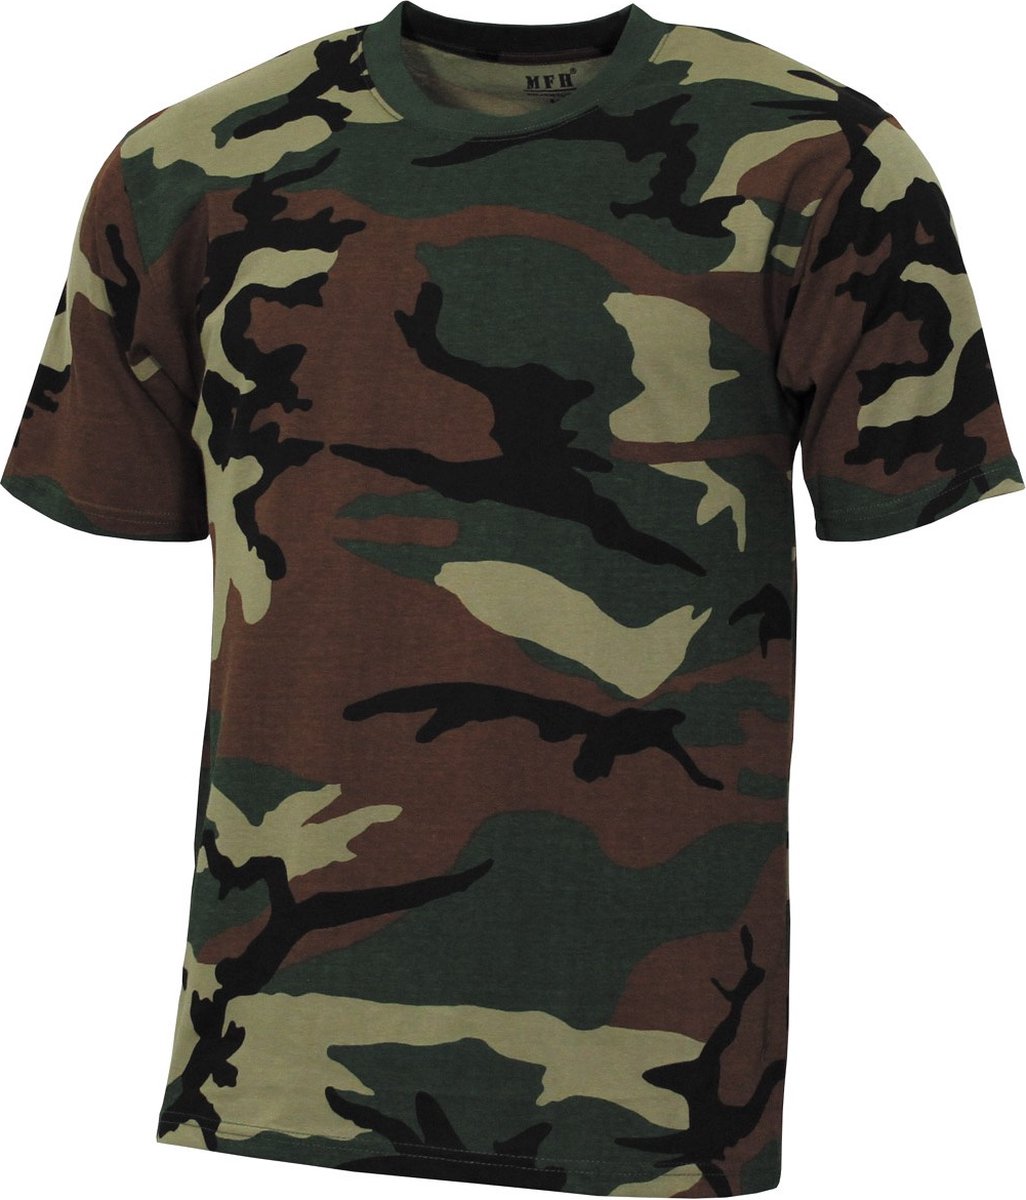 MFH - US T-shirt - 